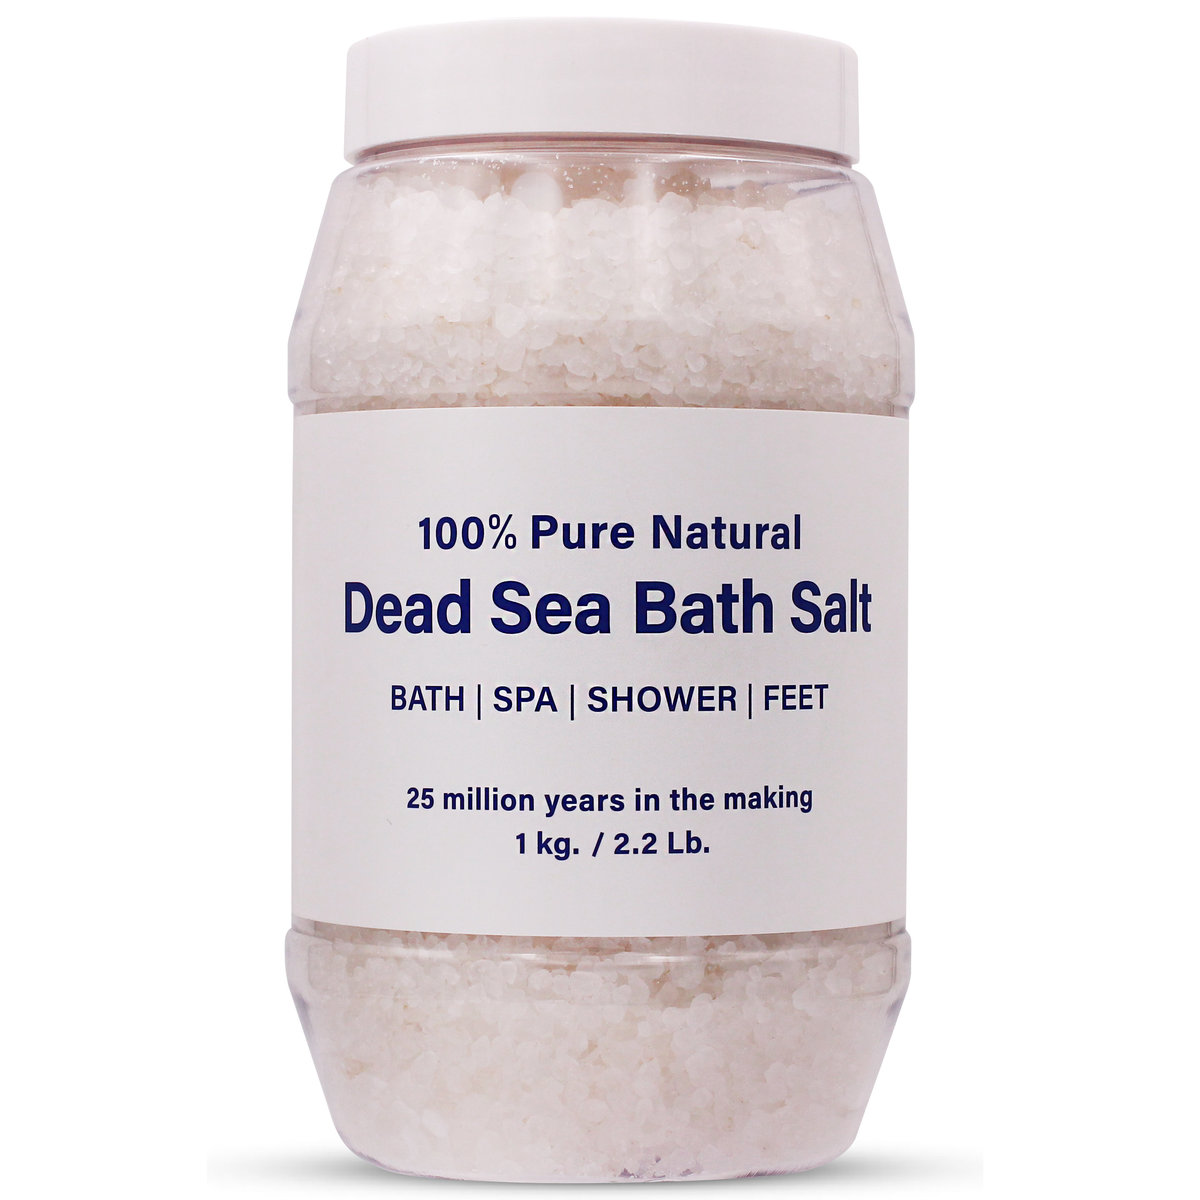 死海鹽 (1kg)